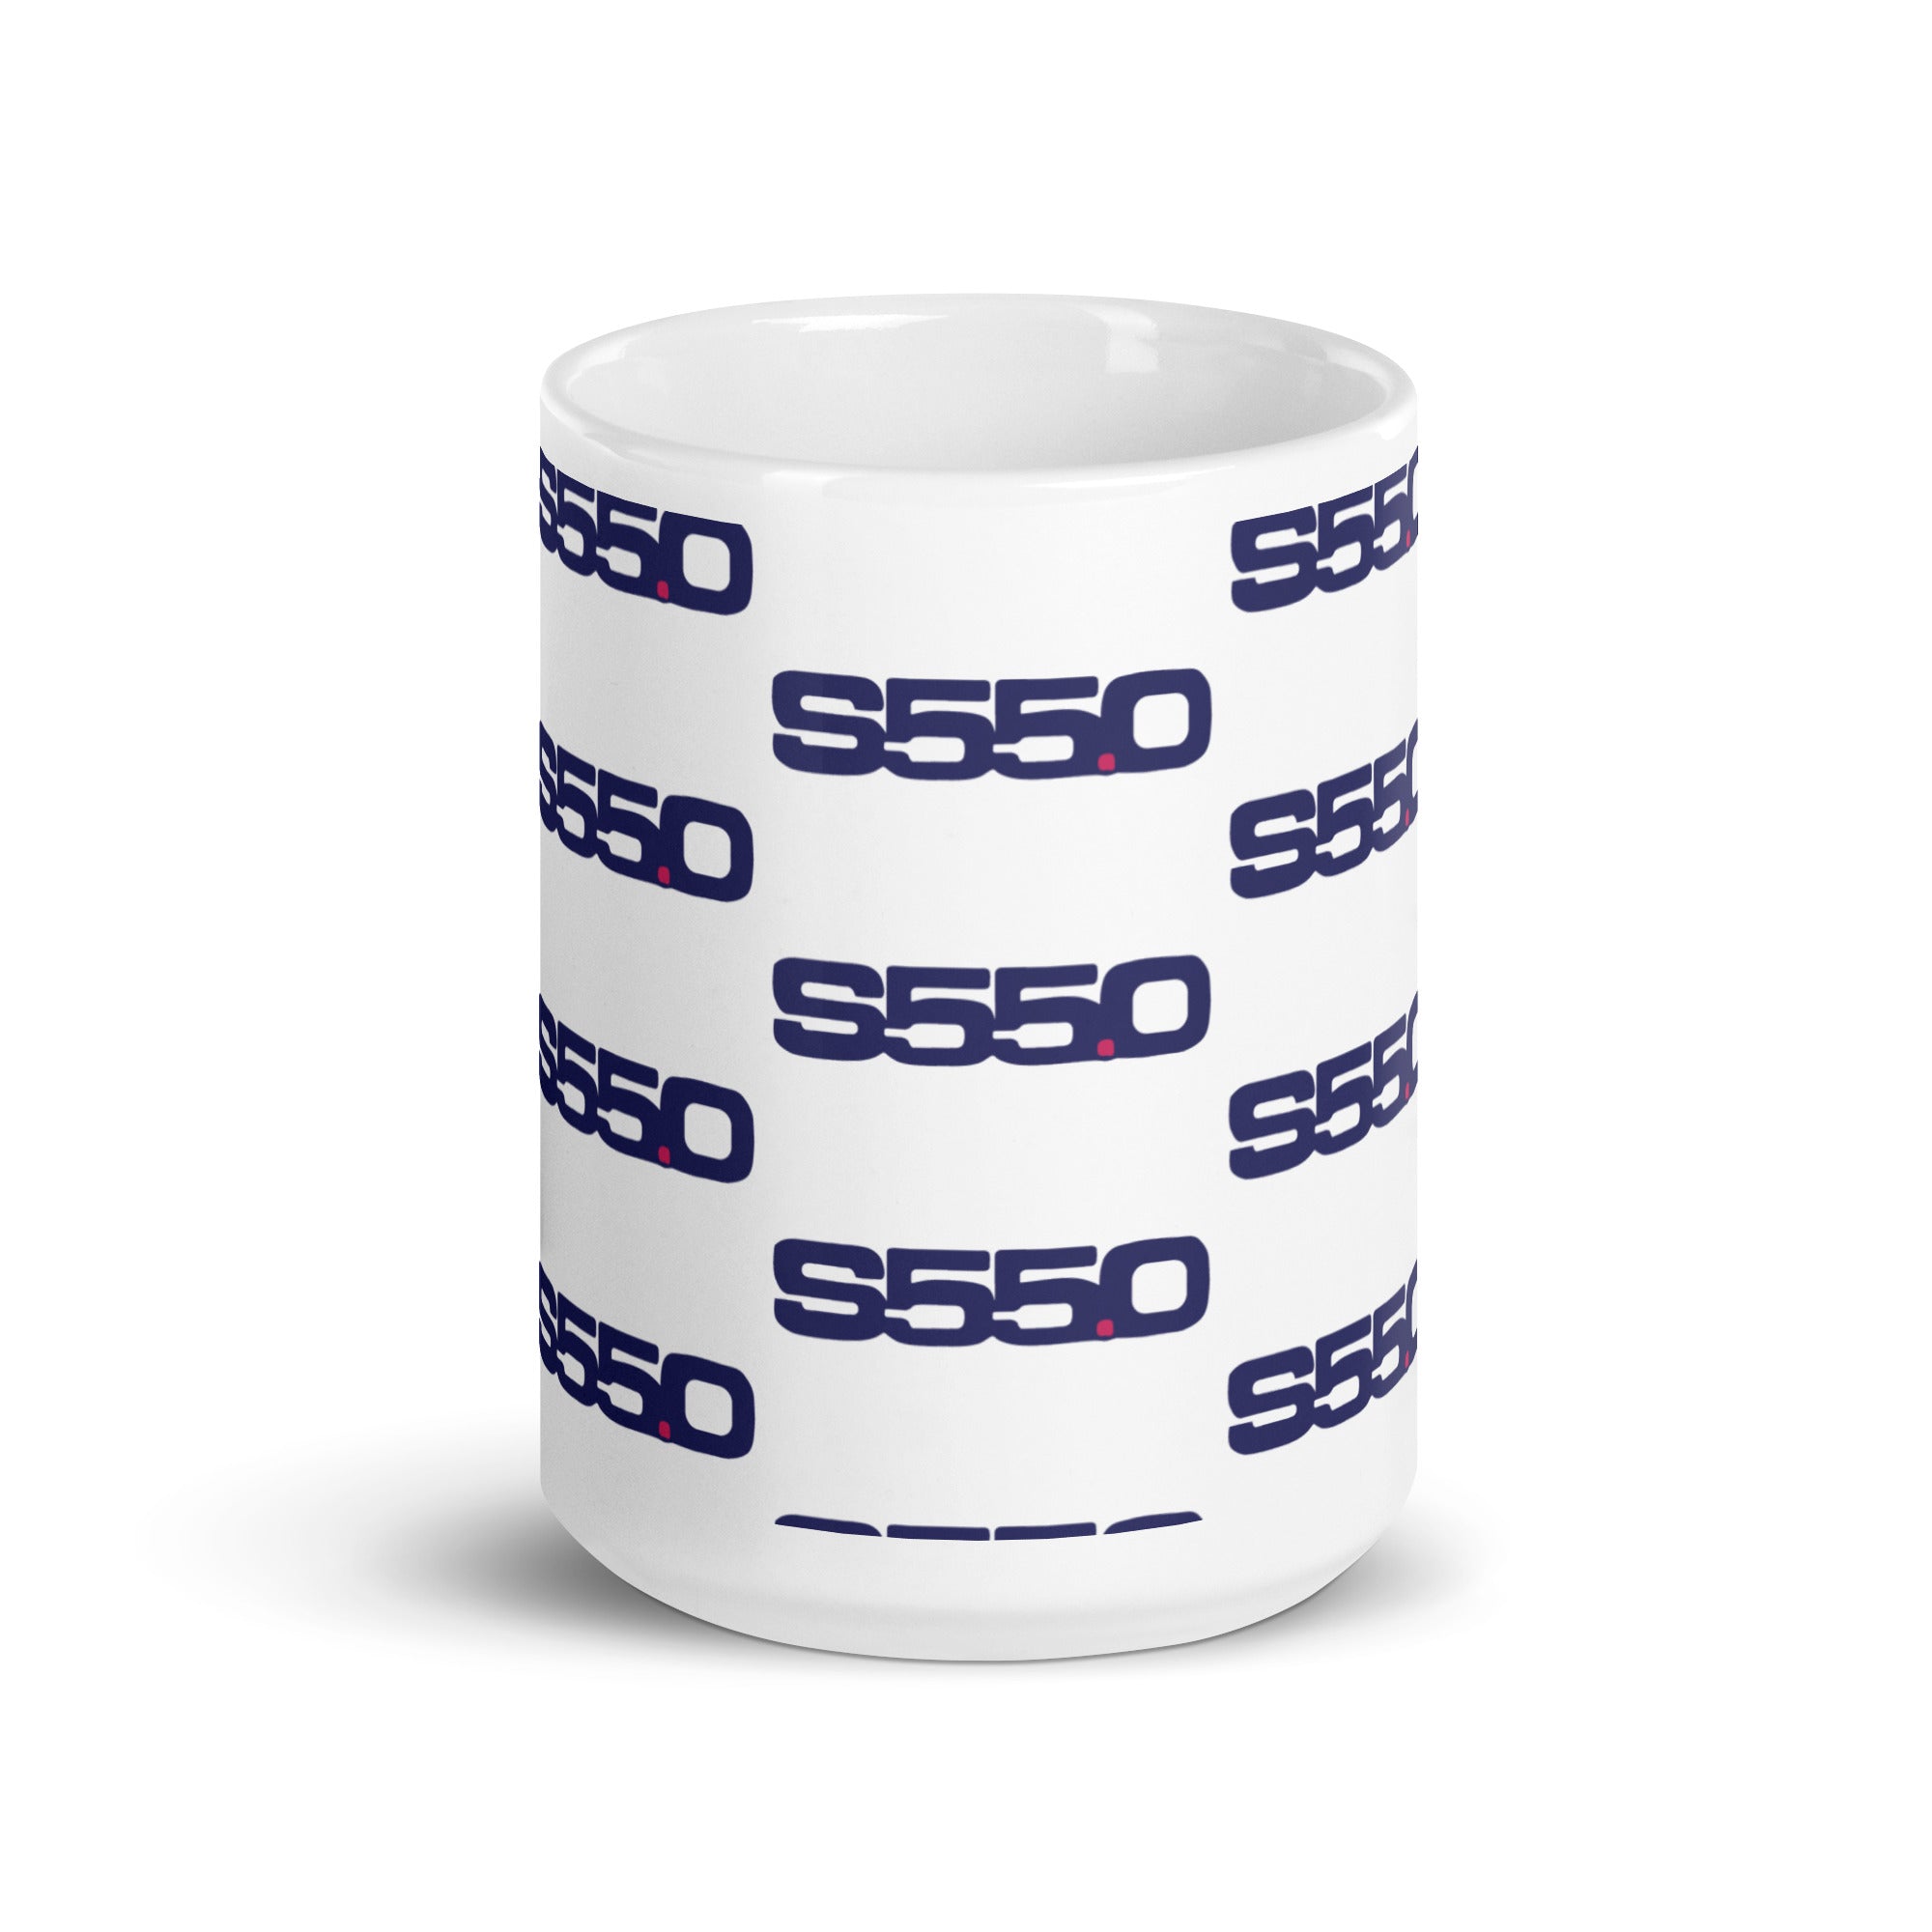 S55.0 White glossy mug